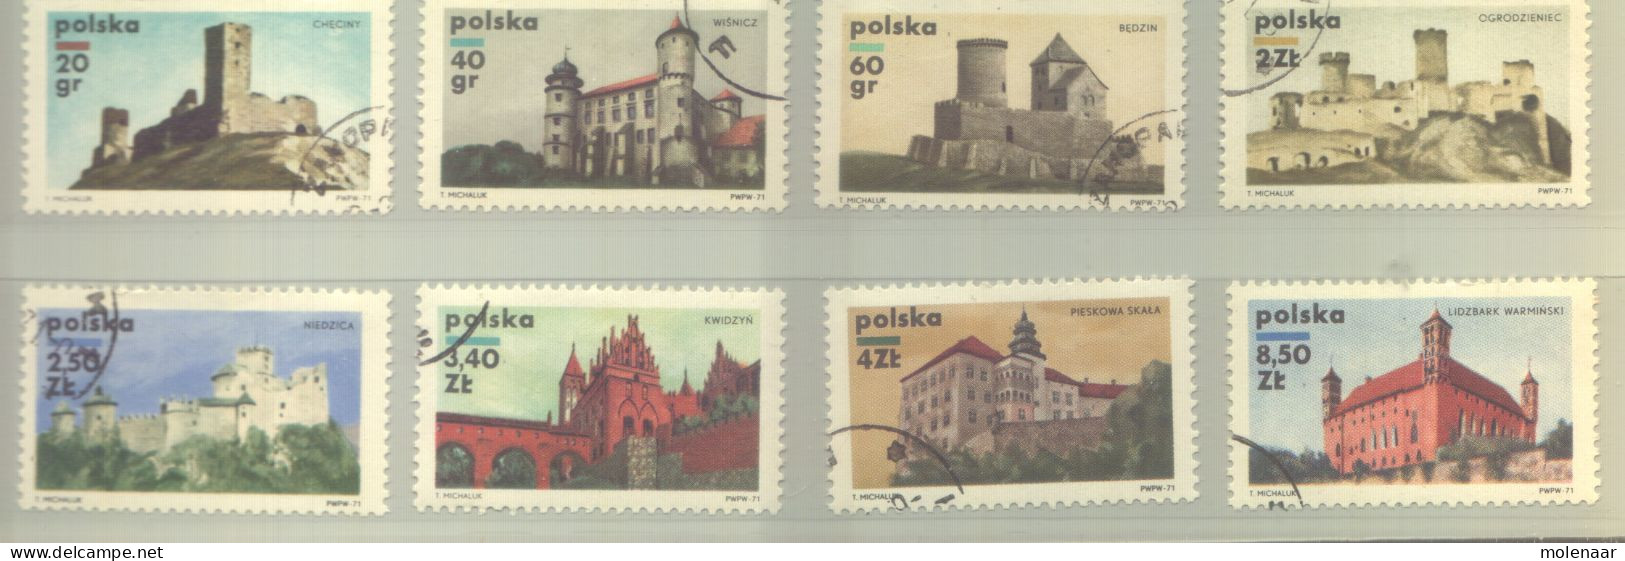 Postzegels > Europa > Polen > 1944-.... Republiek > 1981-90 > Gebruikt 2054-2061 (12190) - Oblitérés